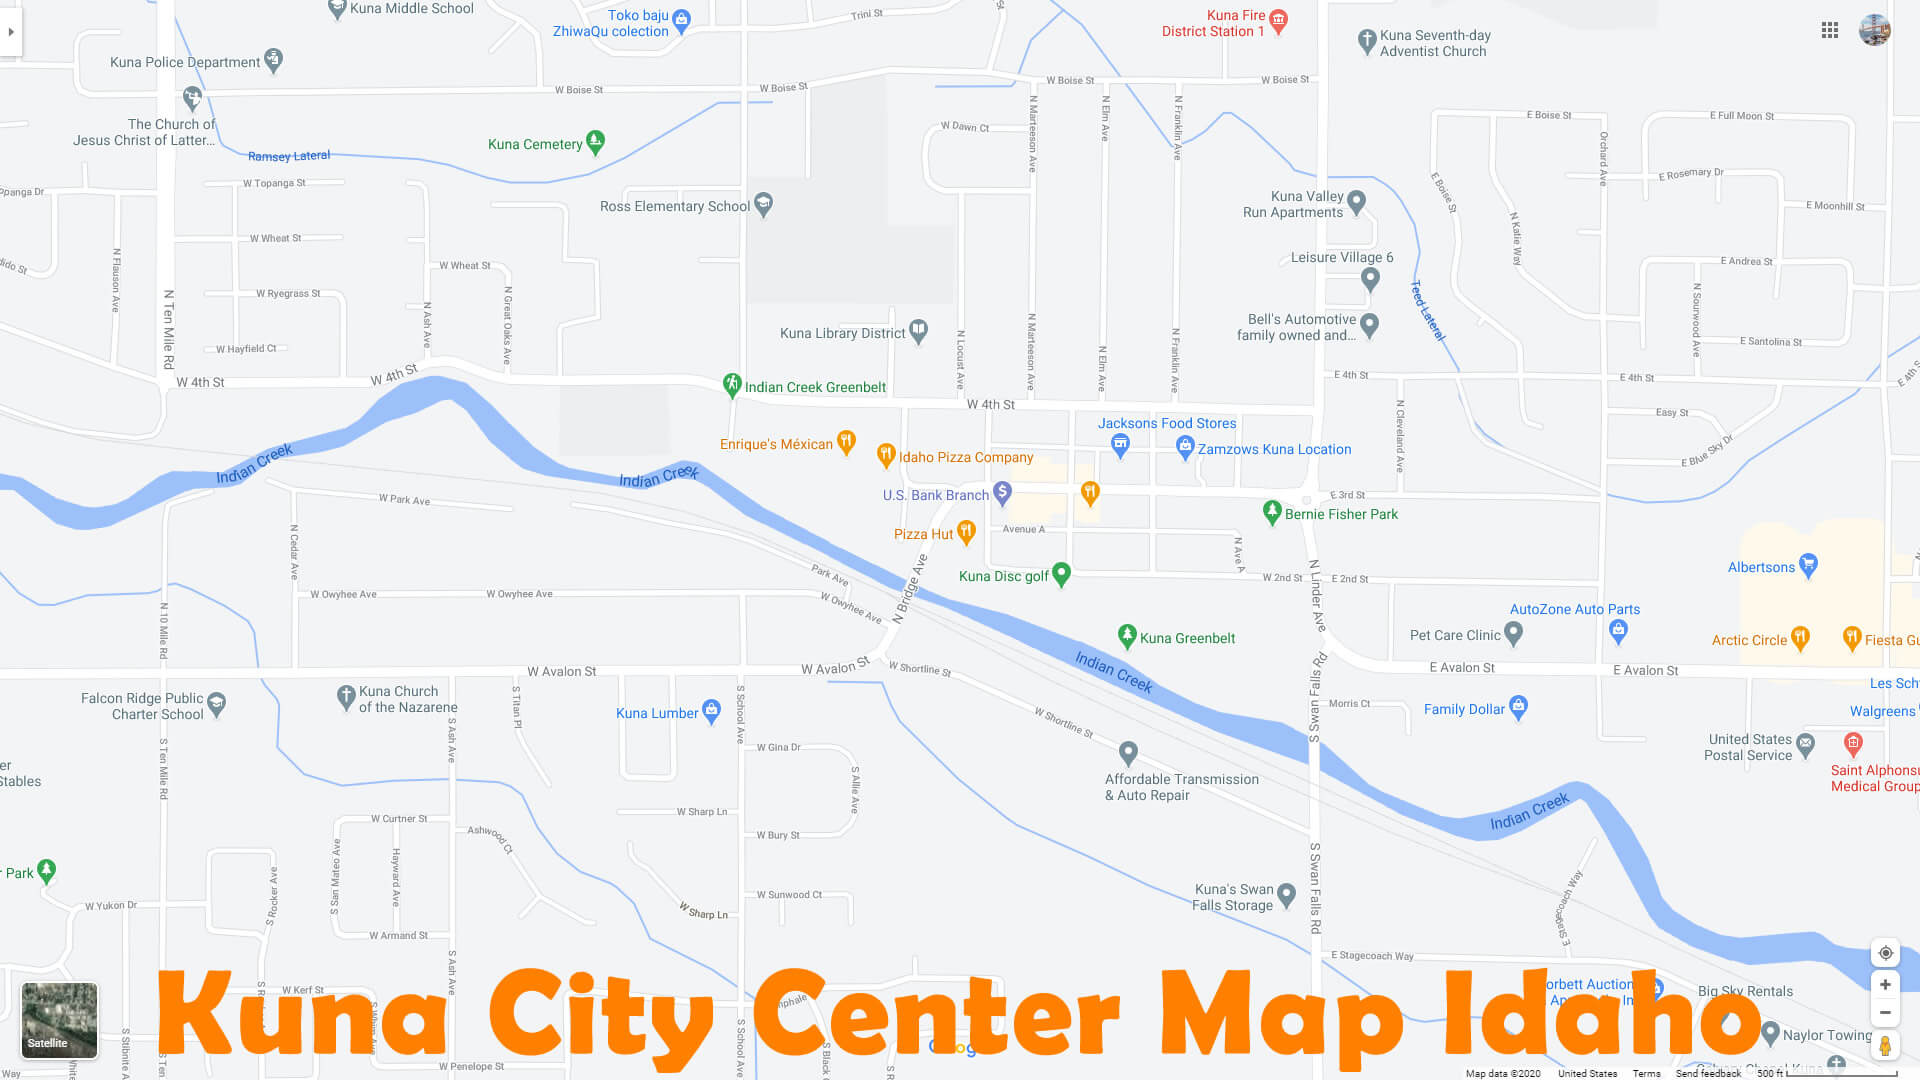 Kuna City Center Map Idaho